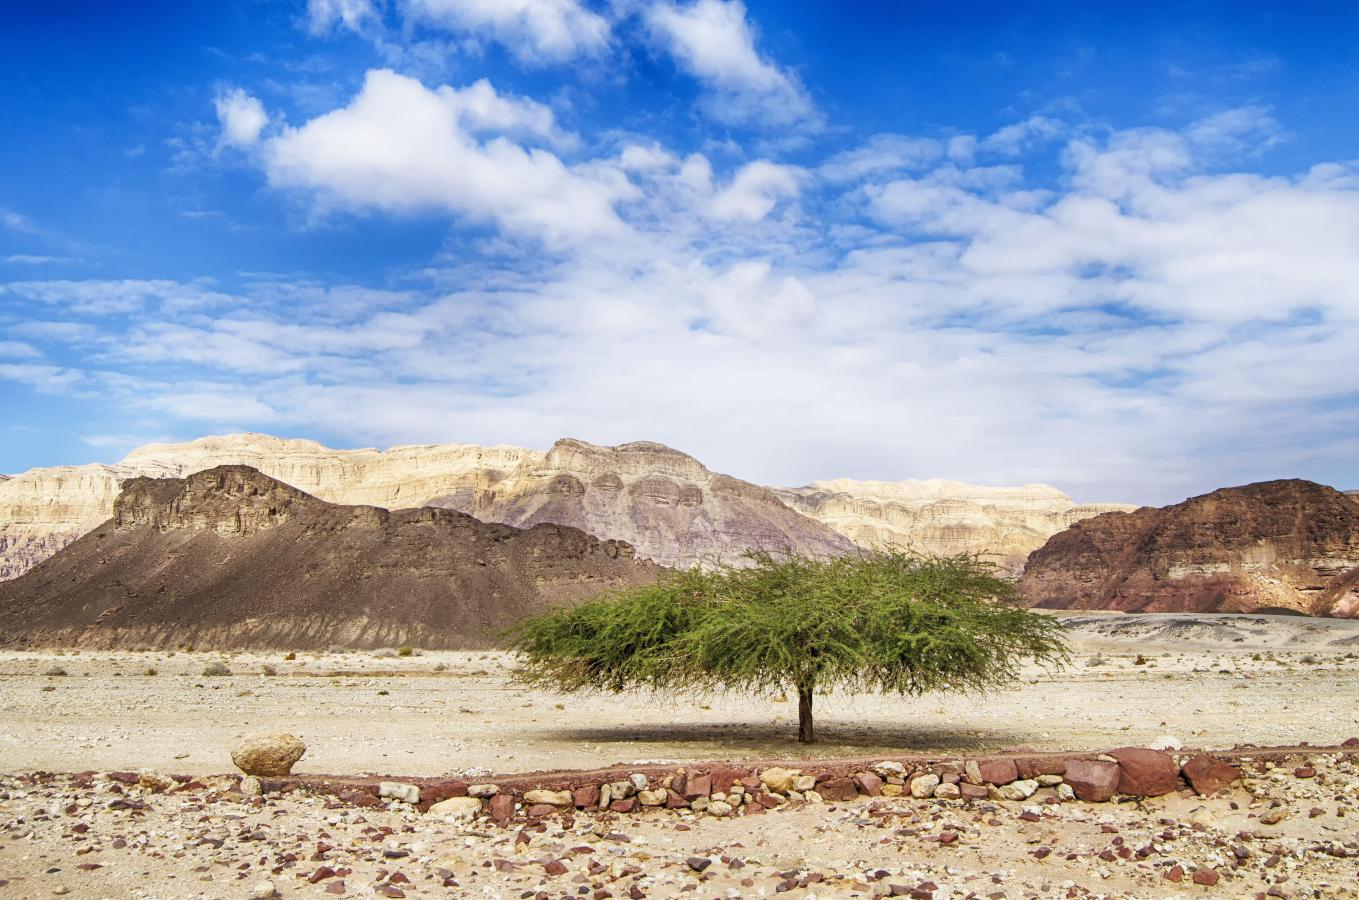 Single tree in the desert.